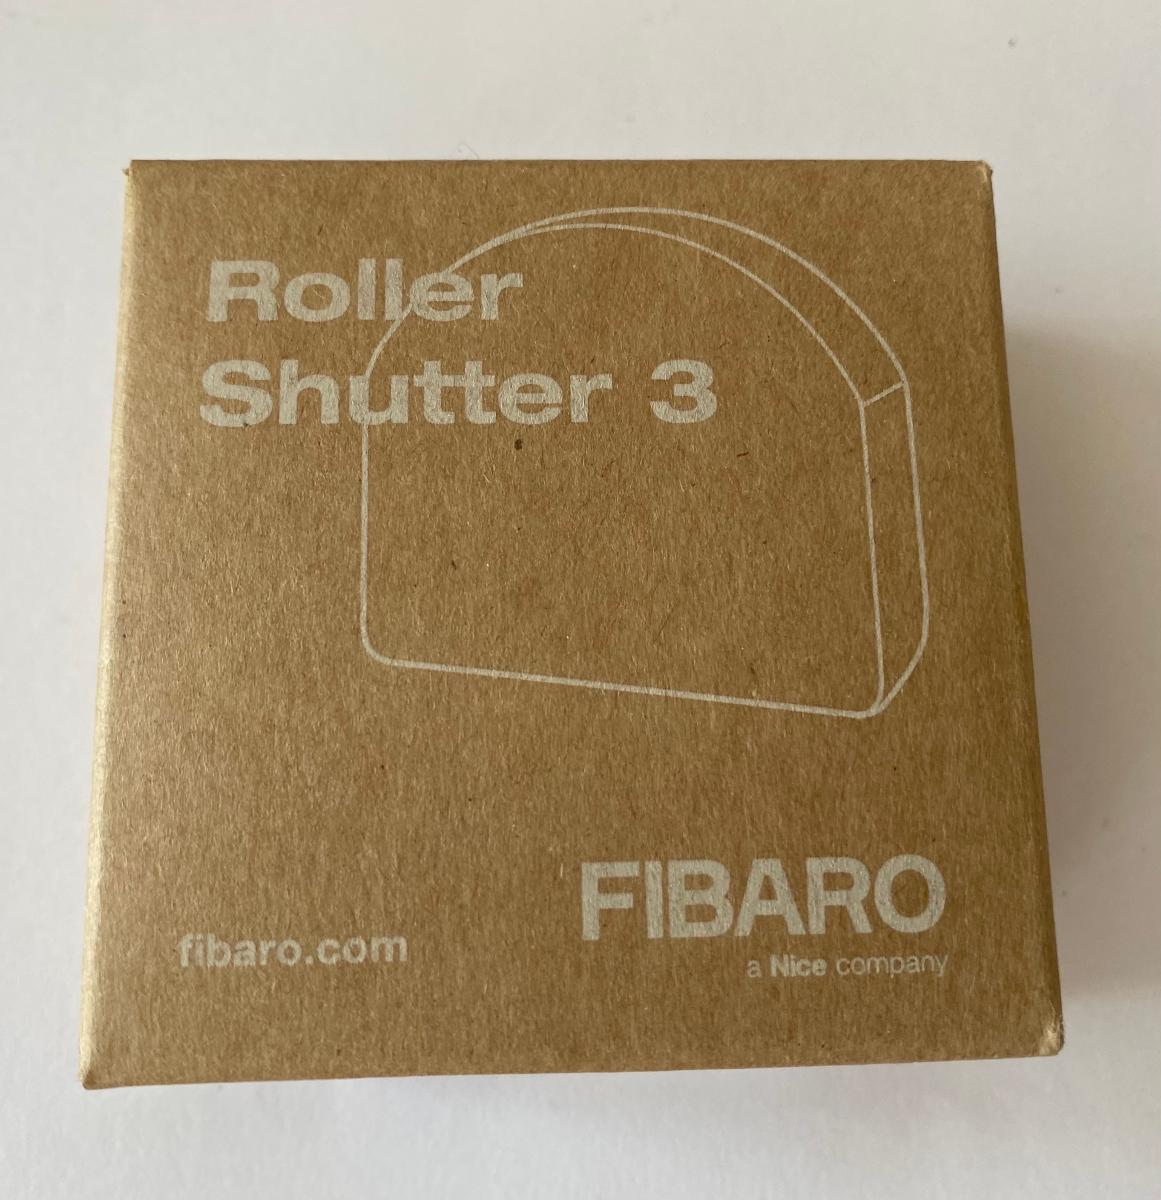 FIBARO Roller Shutter 3 - Elektro